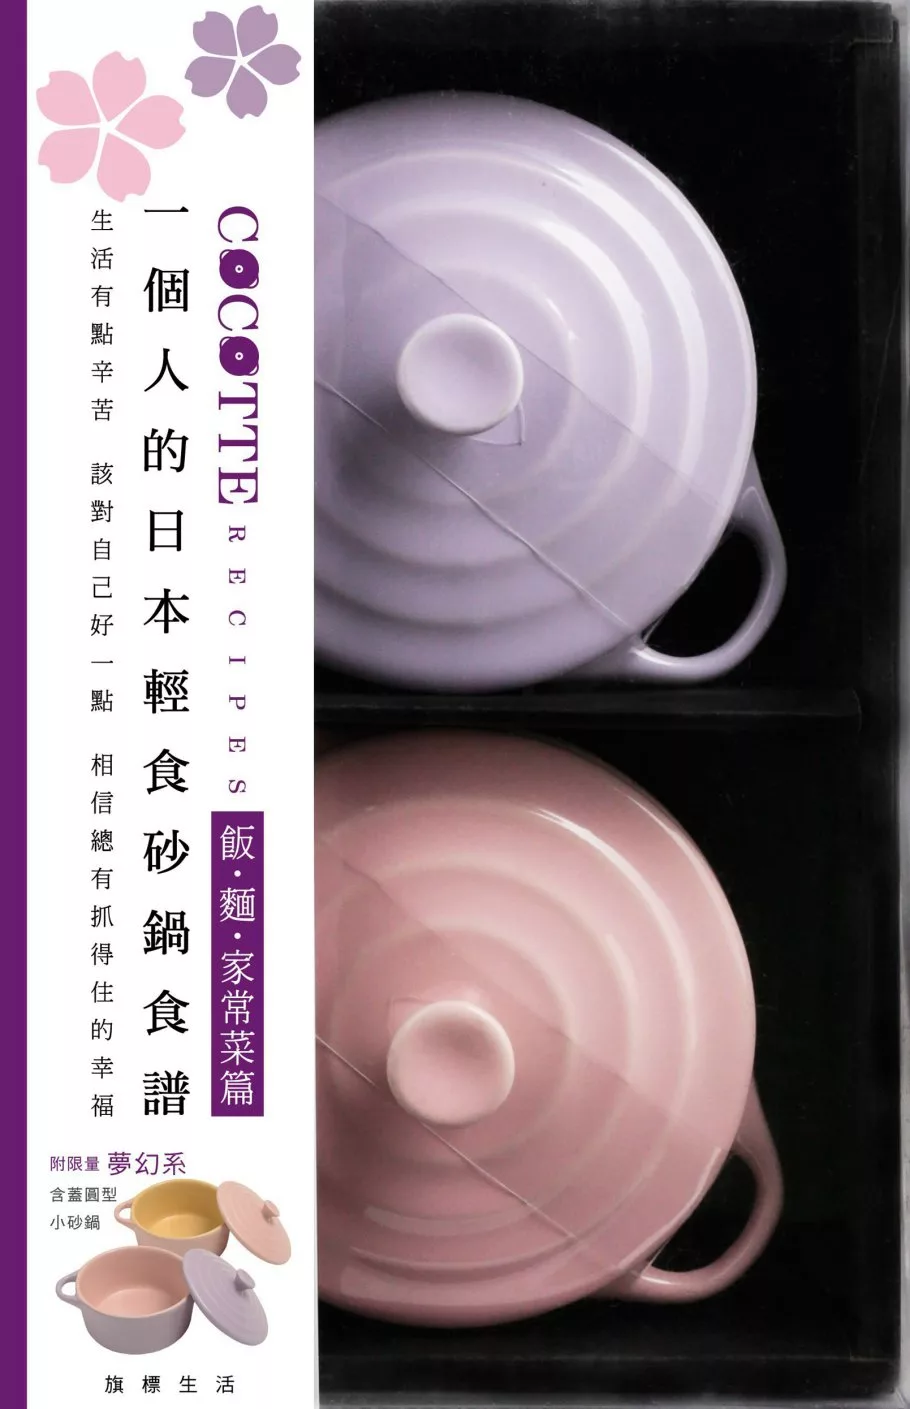 COCOTTE RECIPES 一個人的日本輕食砂鍋食譜：飯‧麵‧家常菜篇 v2（附限量夢幻系粉紅與粉紫含蓋小砂鍋共2個）